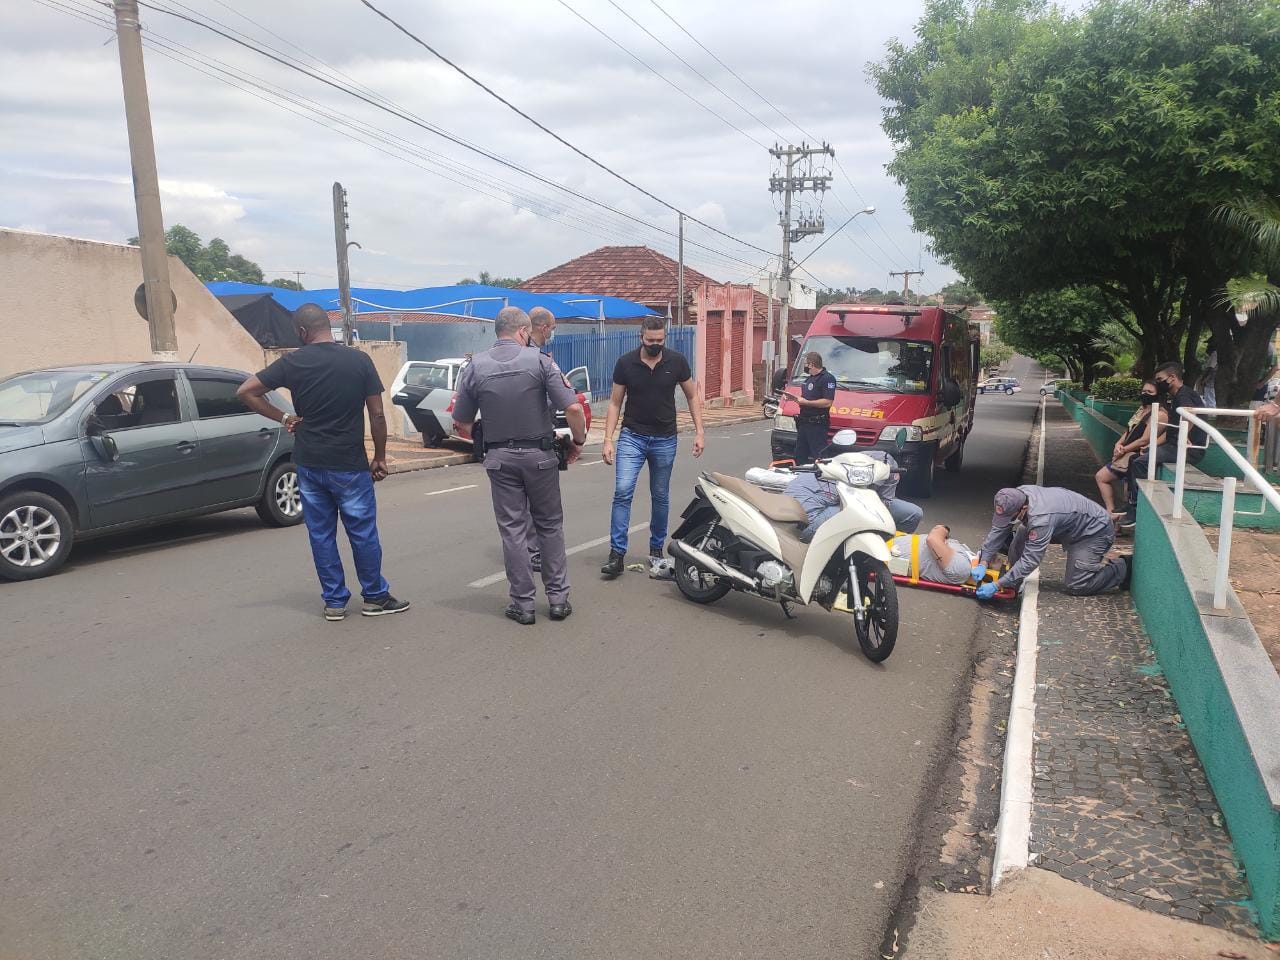 Motociclista fica ferido após colisão contra carro no centro de Santa Fé do Sul